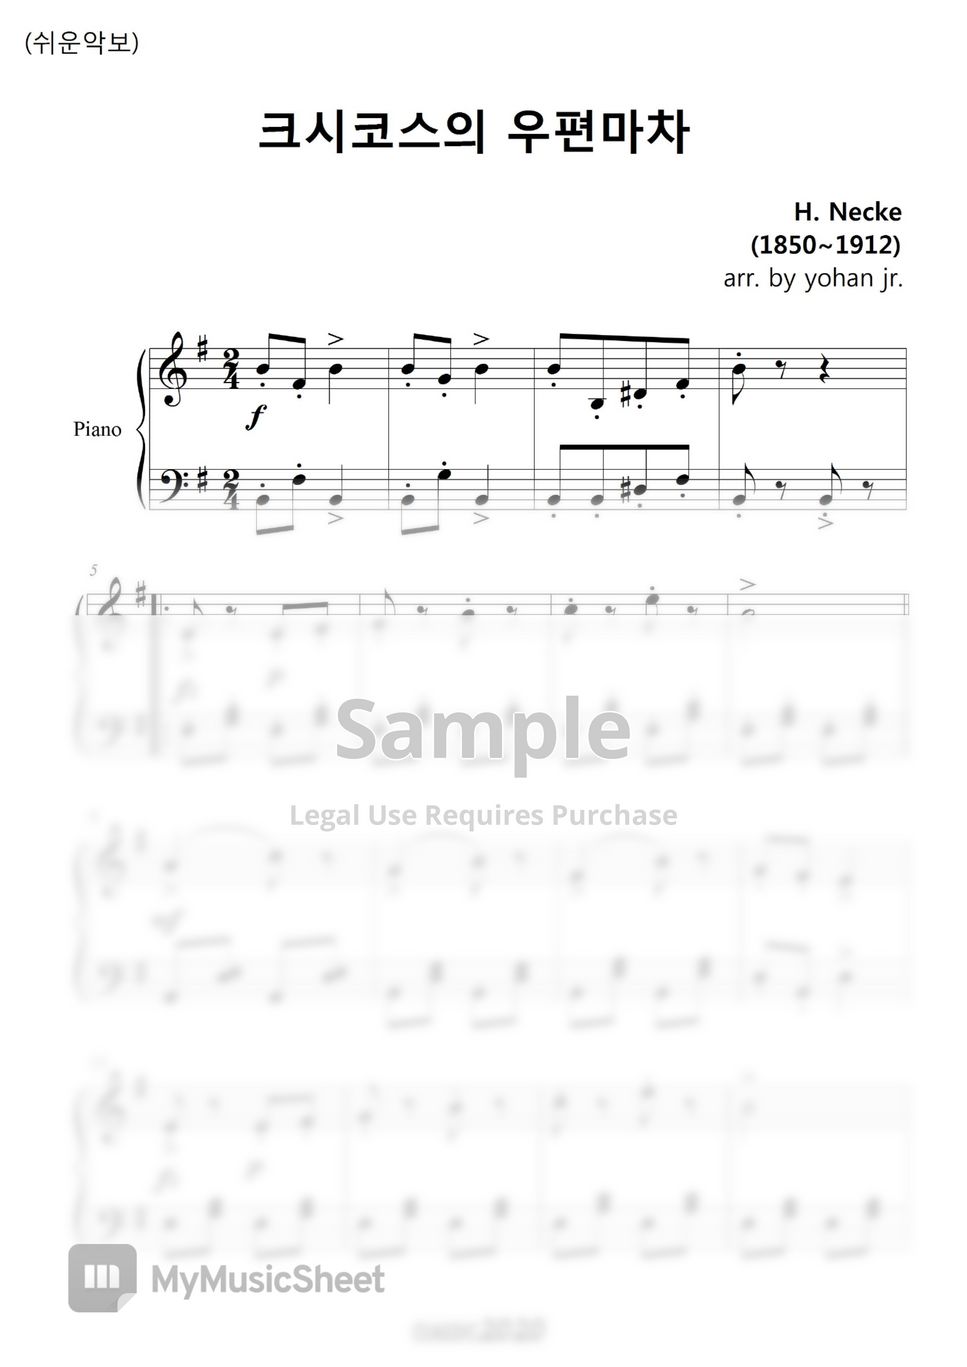 H. Necke - Csiskos Post in E minor (easy piano) by classic2020